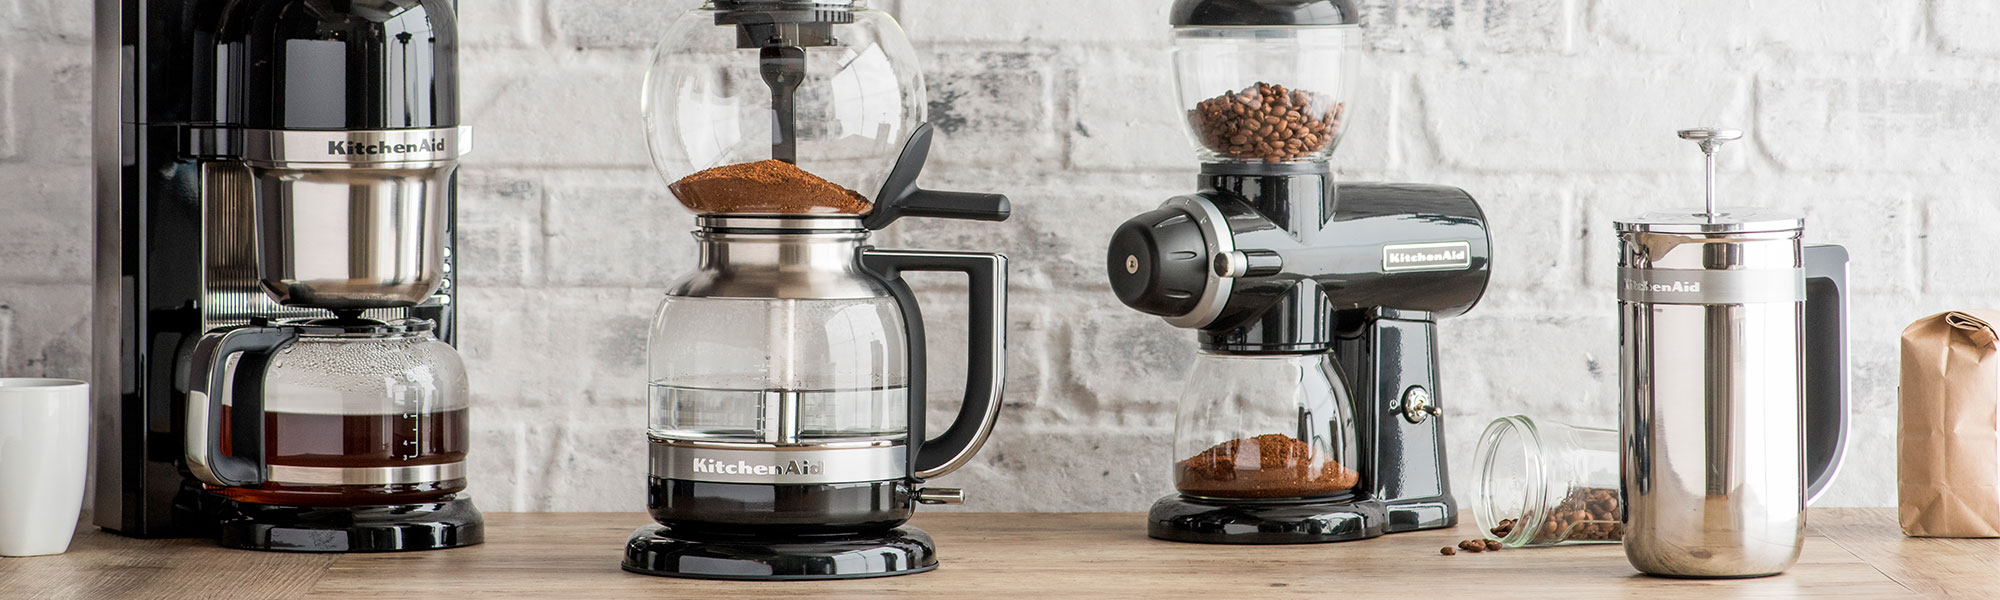 Thriller støn Retouch Kaffemaskine tilbud: 100+ forskellige modeller (2020 købsguide)